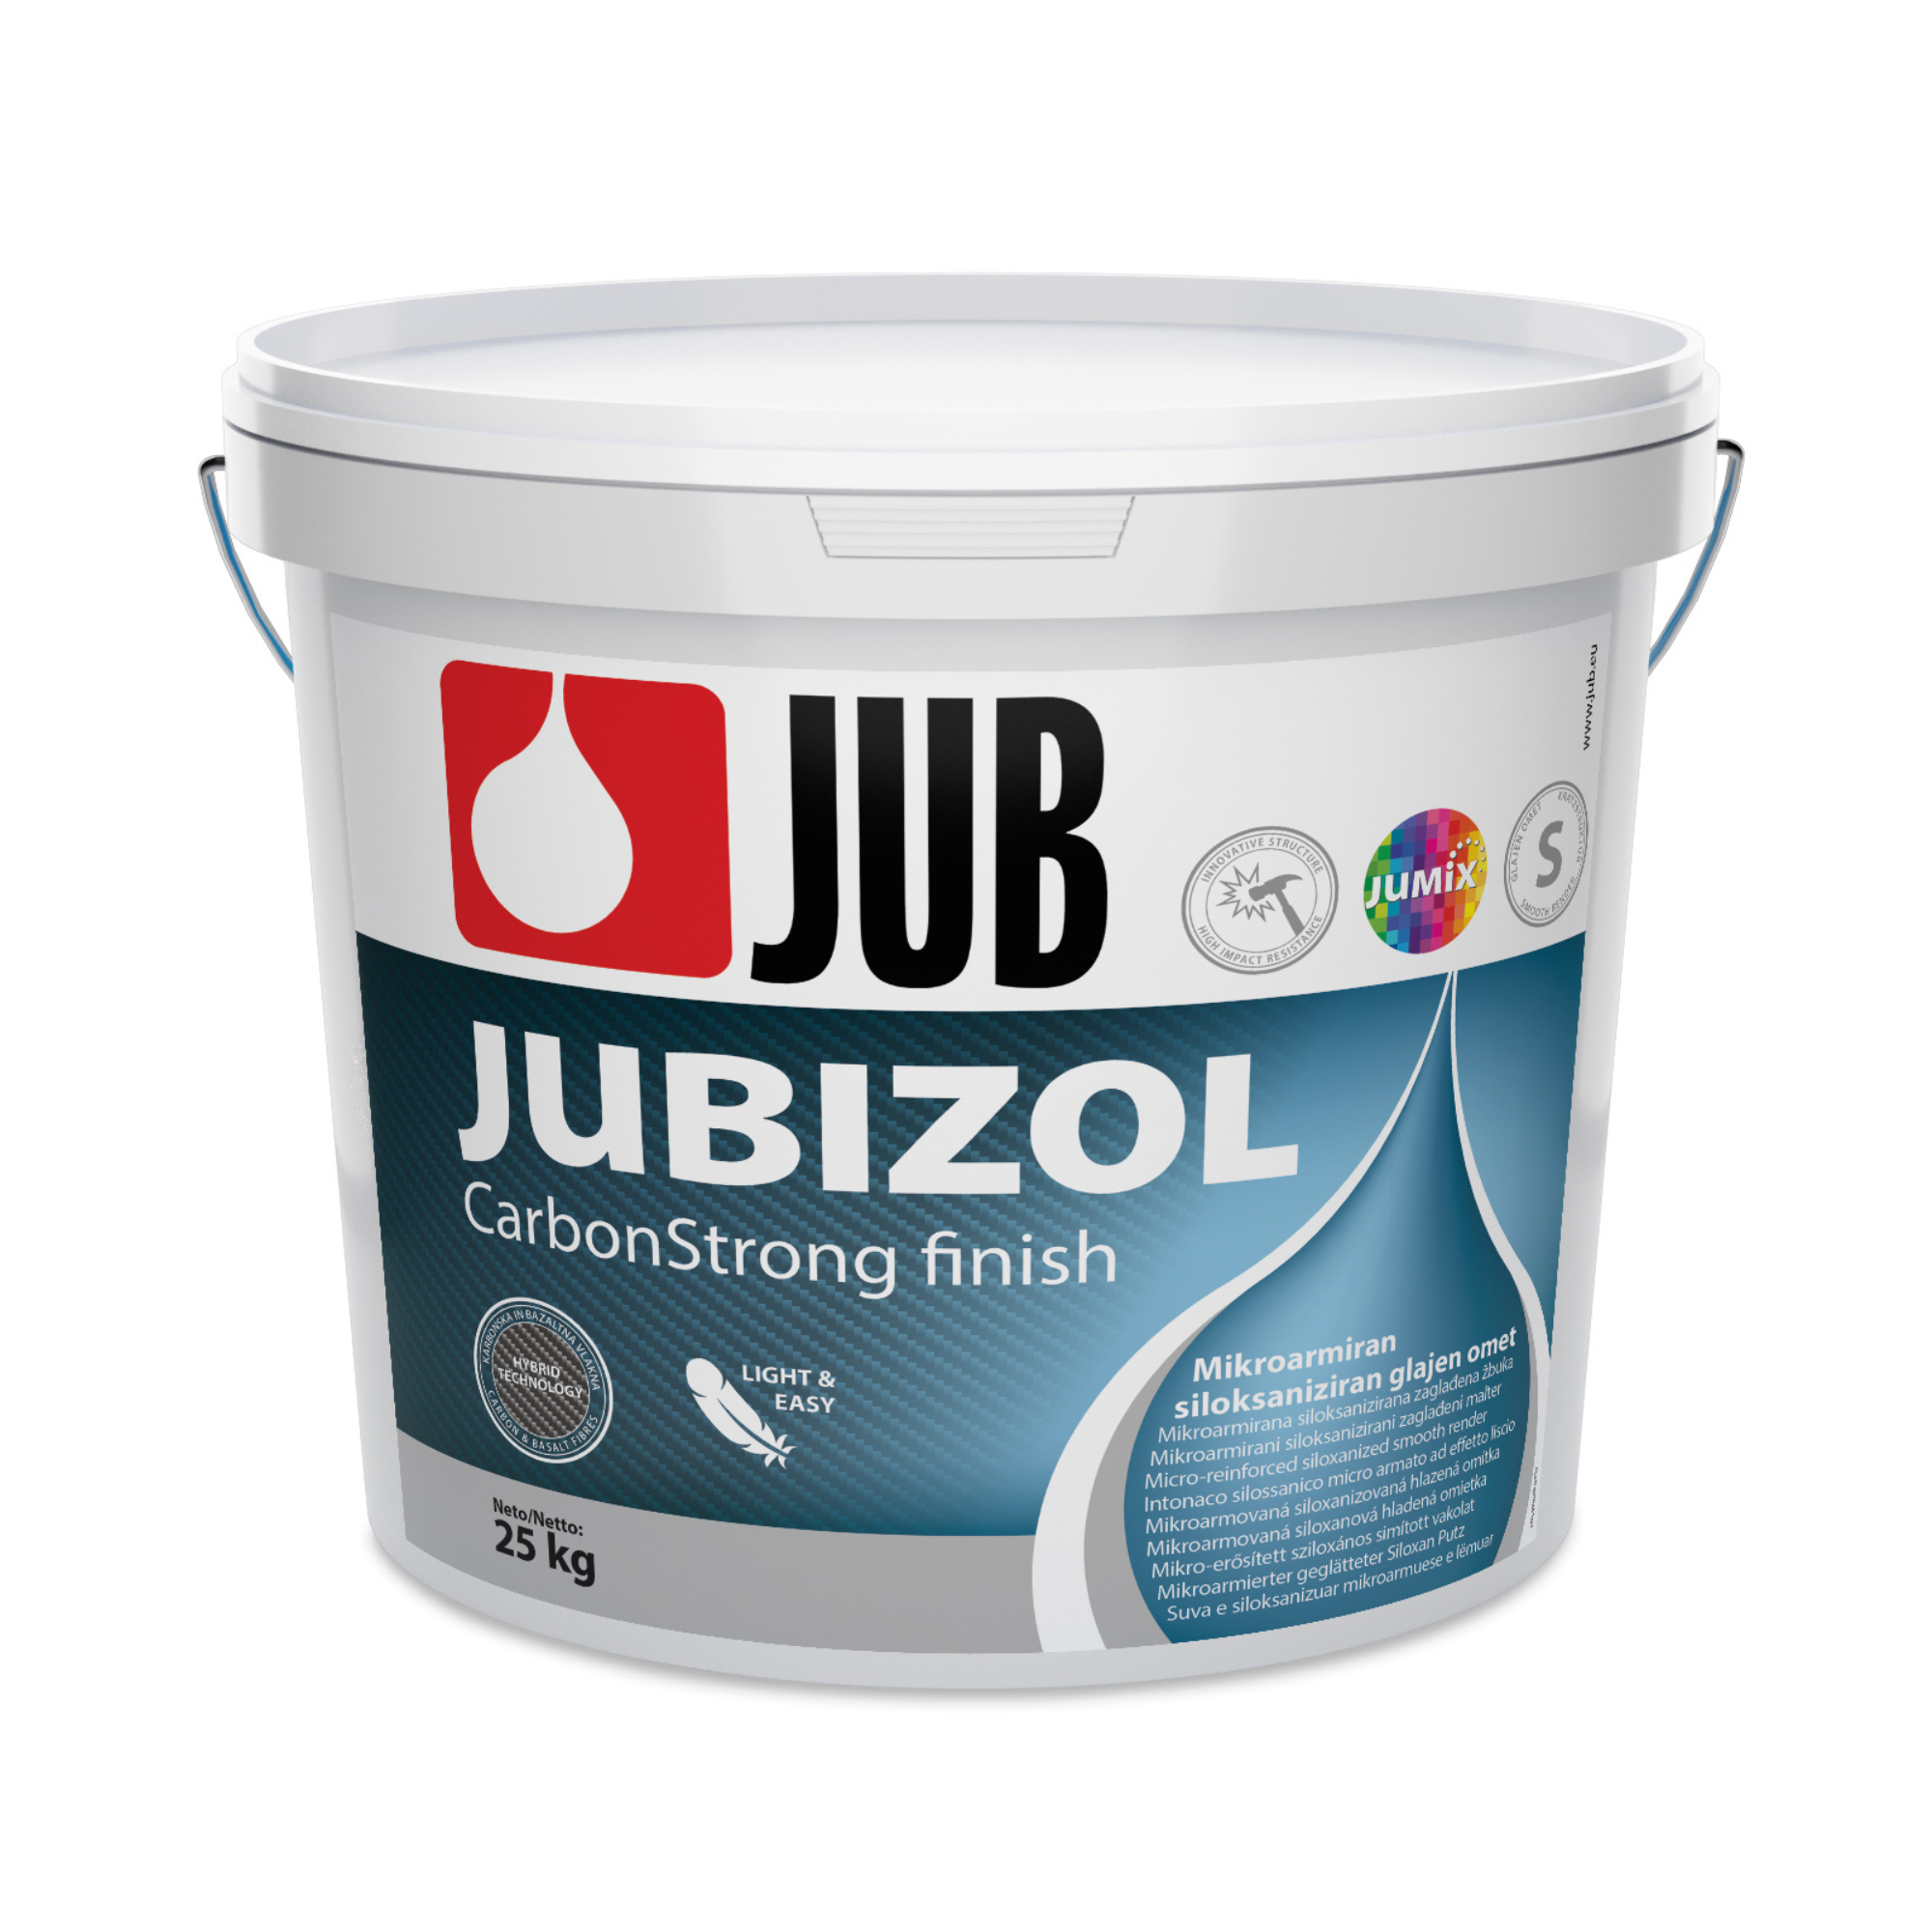 JUB JUBIZOL CarbonStrong finish S 1.5 a 2.0 mikroarmovaná siloxanová hladená omietka 25 kg